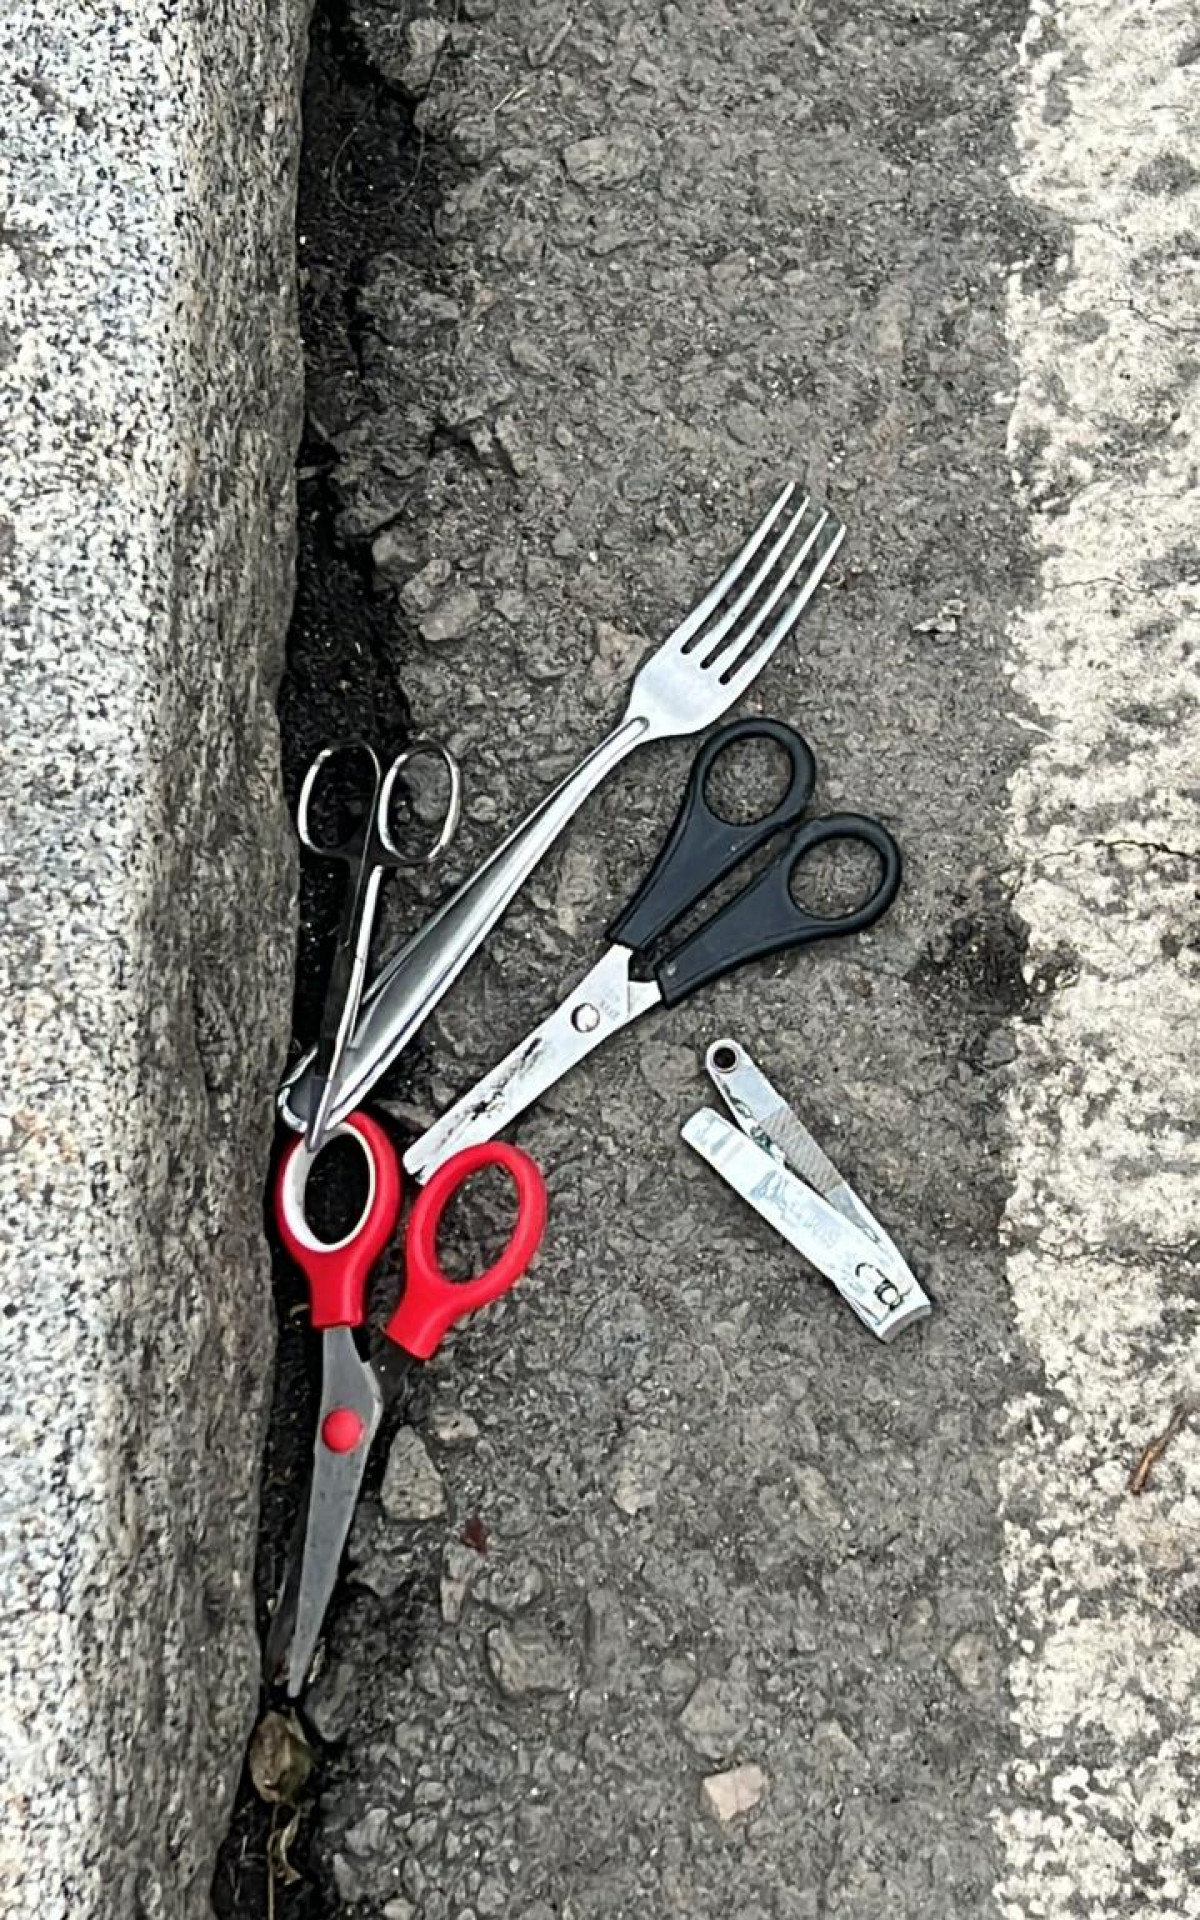 Tesouras, garfos e cortadores de unha estão entre os objetos apreendidos - Divulgação / PMERJ